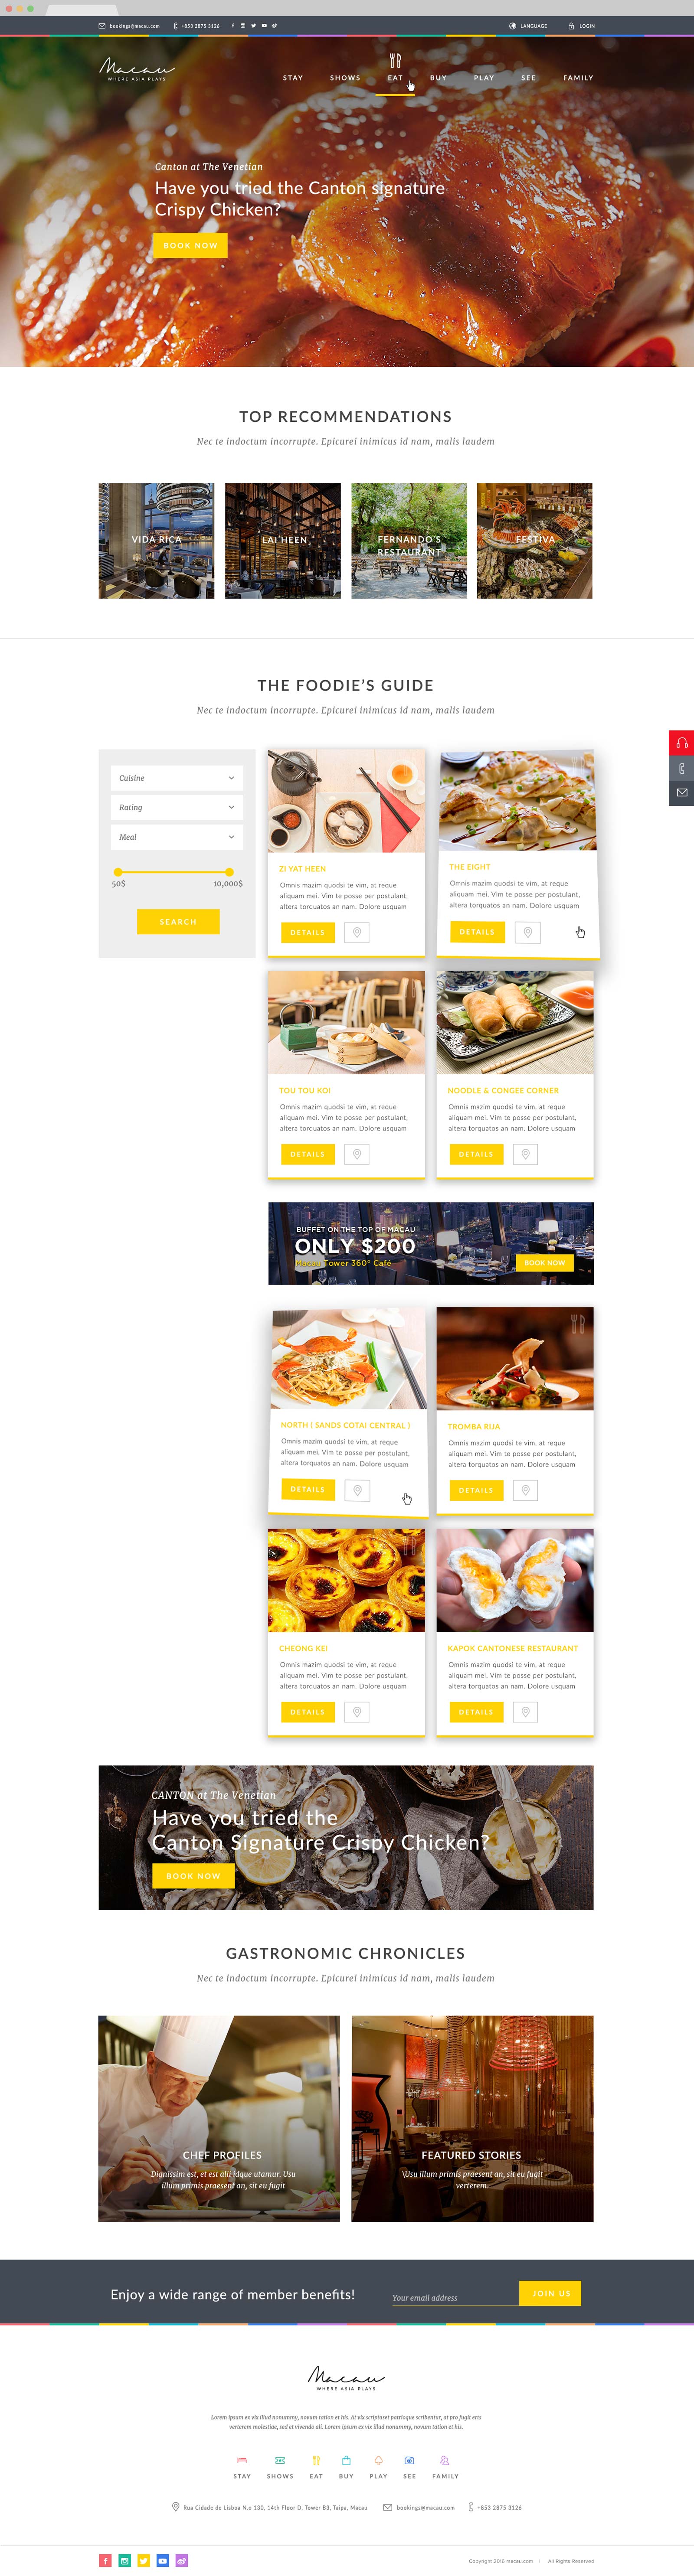 web design bali macau.com 01 - Macau.com